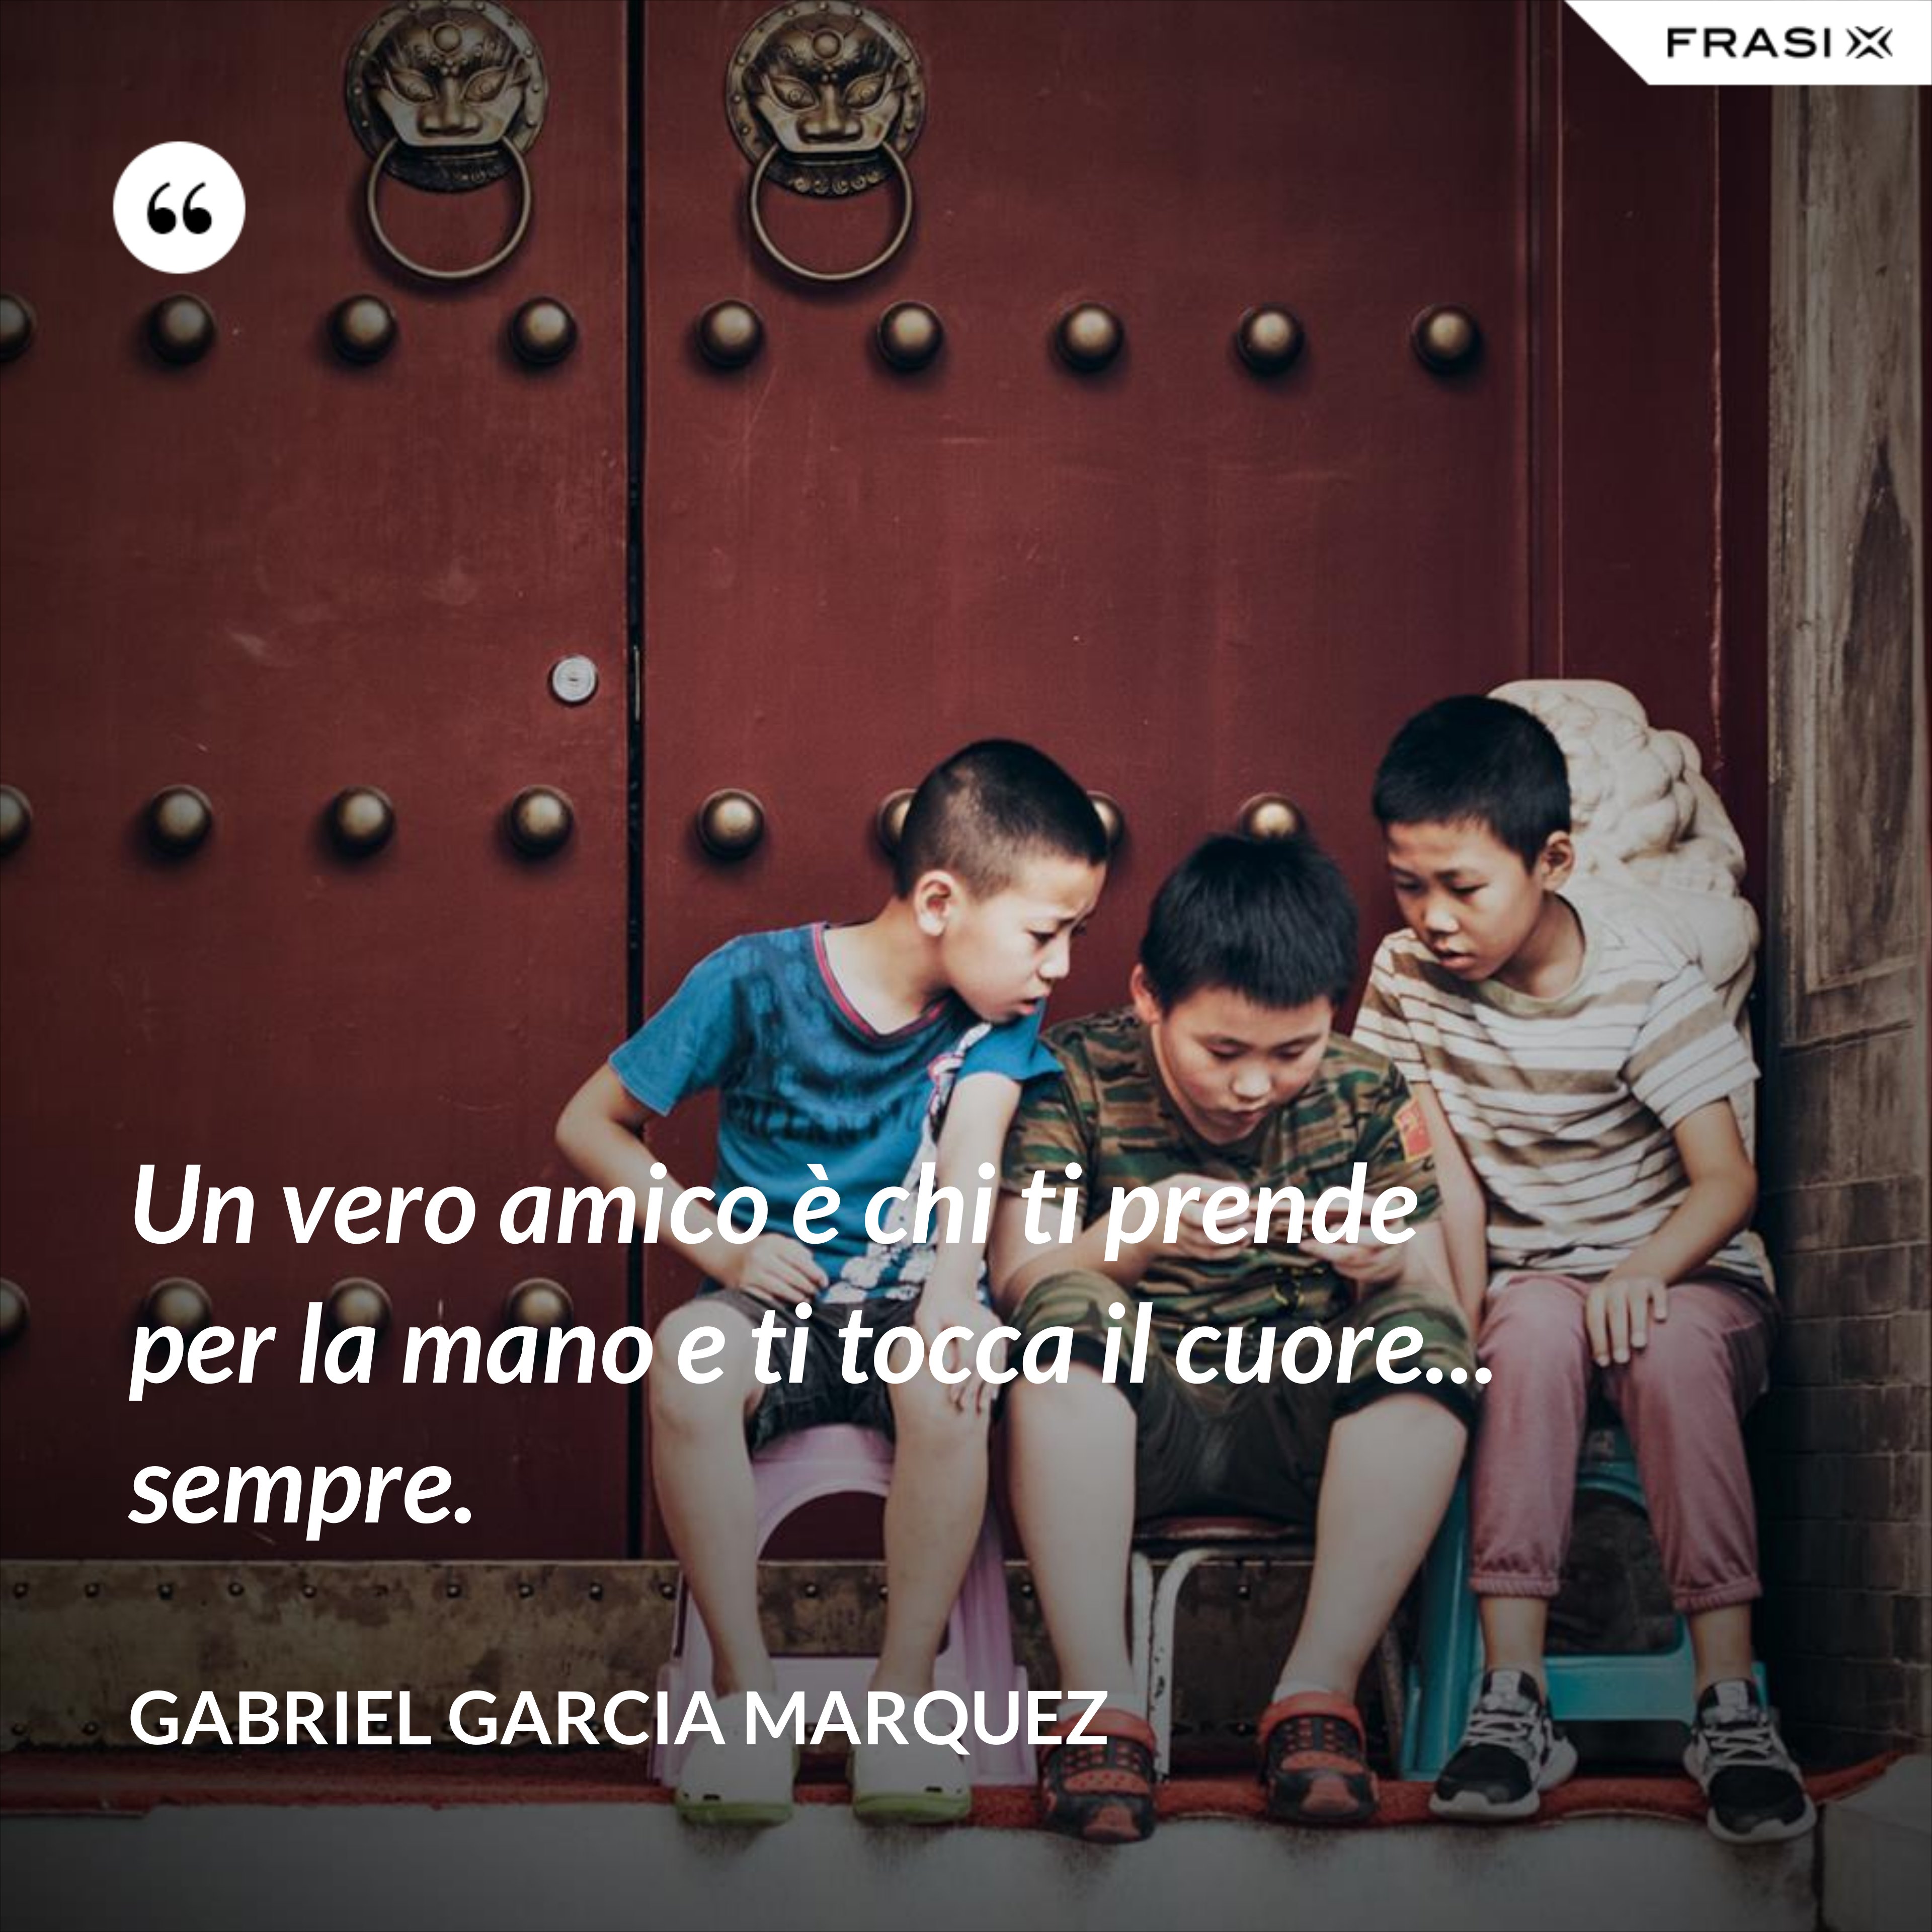 Un vero amico è chi ti prende per la mano e ti tocca il cuore... sempre. - Gabriel Garcia Marquez